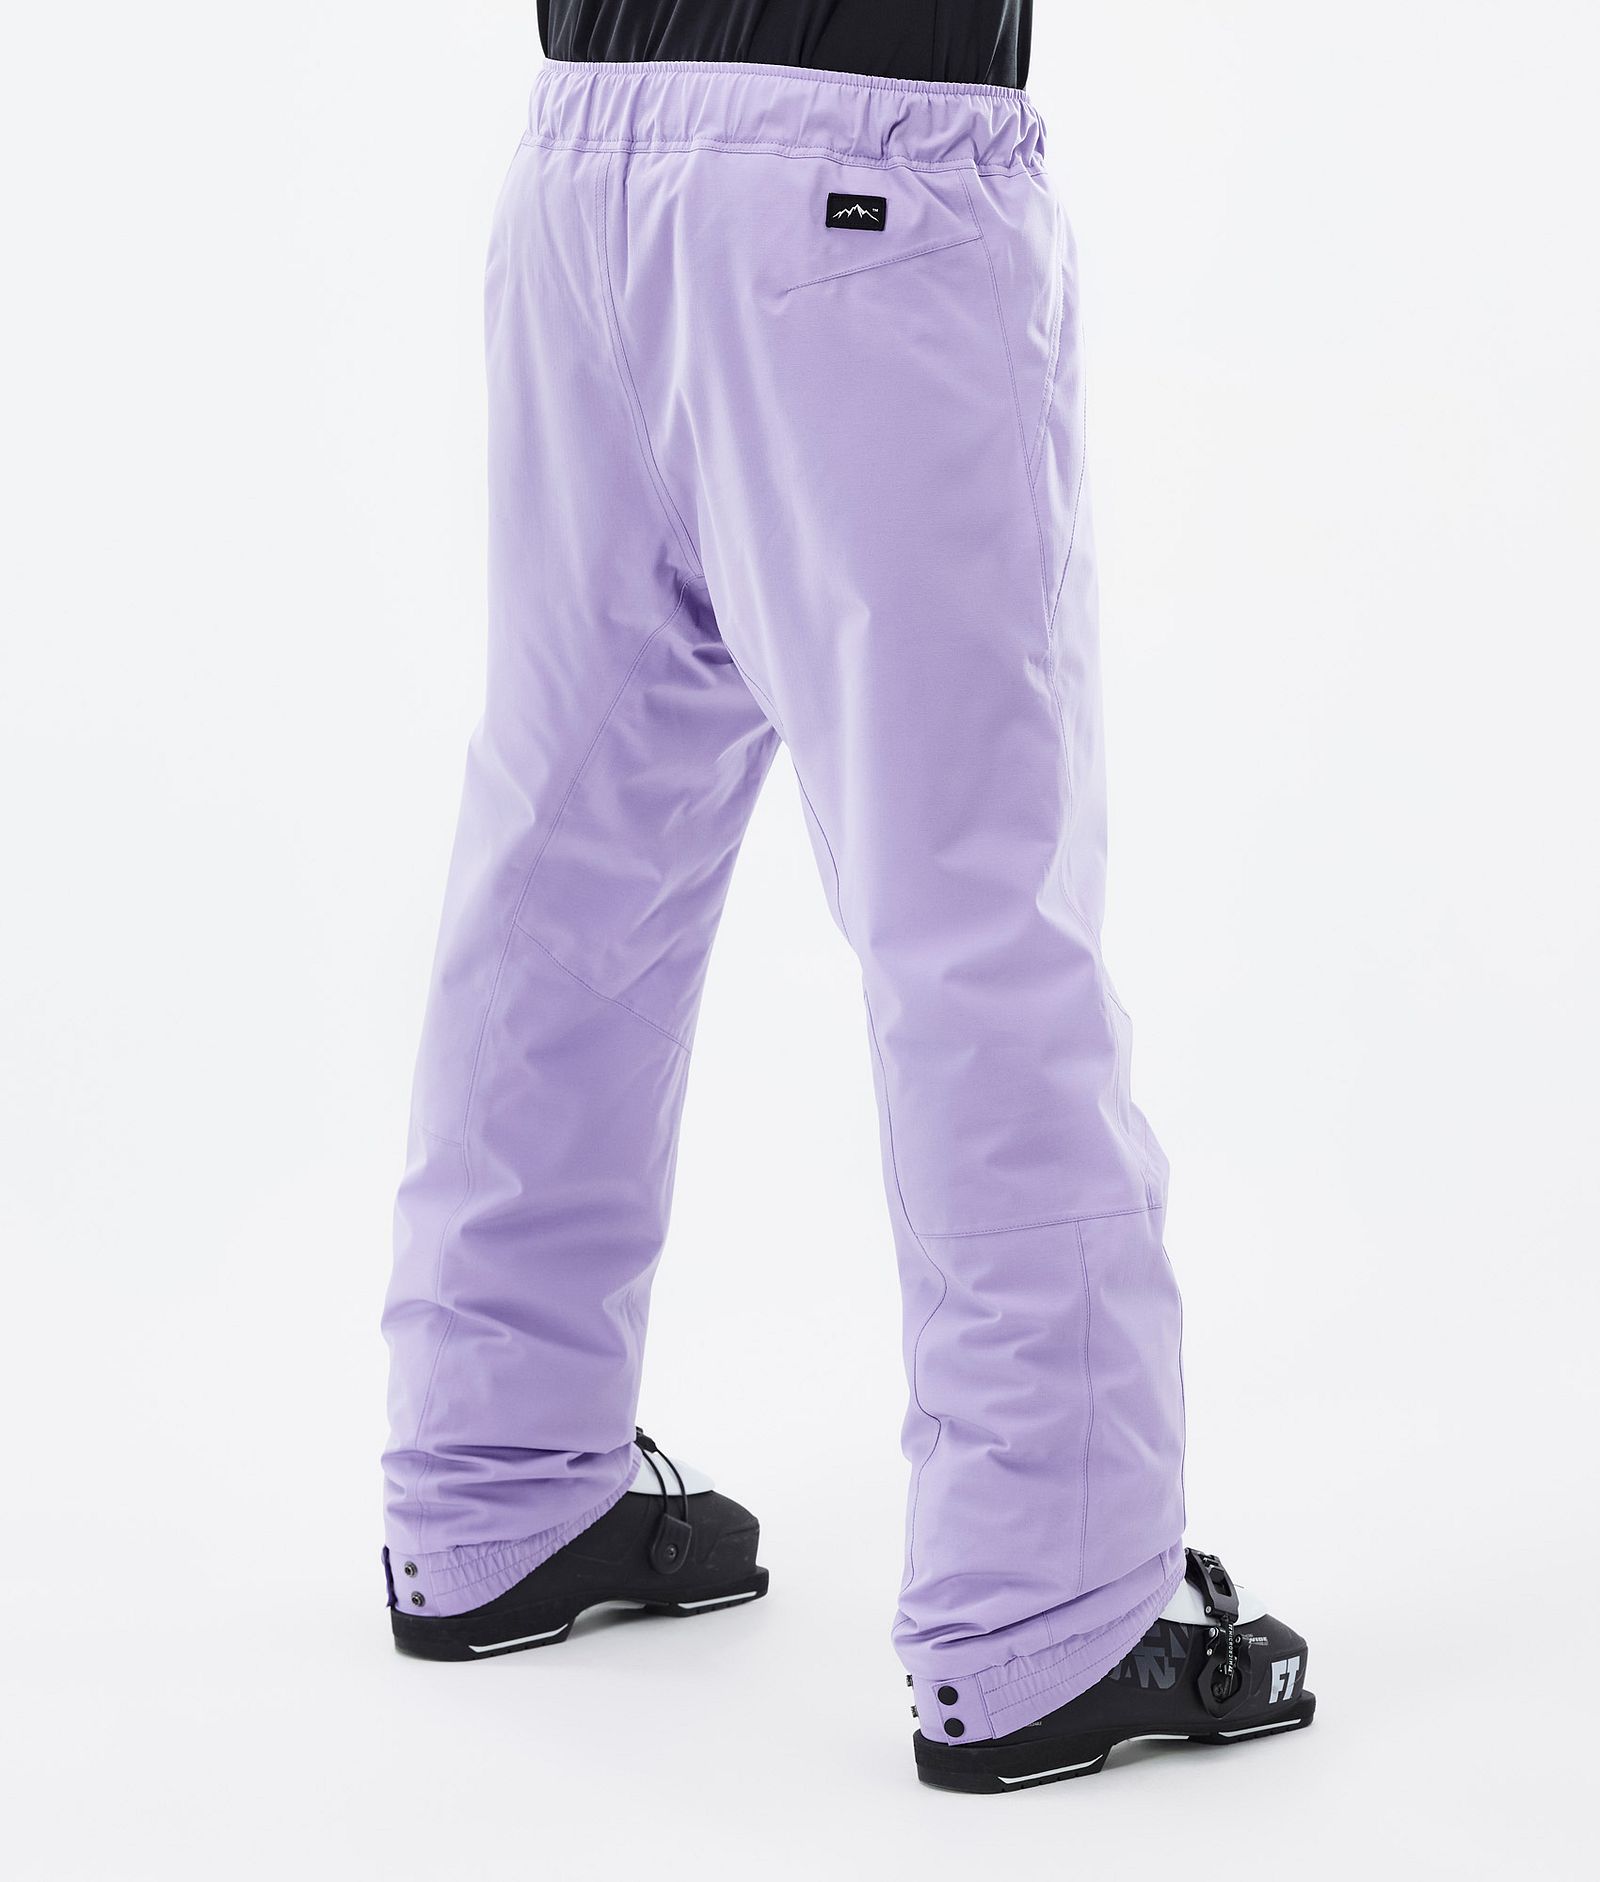 Blizzard 2022 Ski Pants Men Faded violet